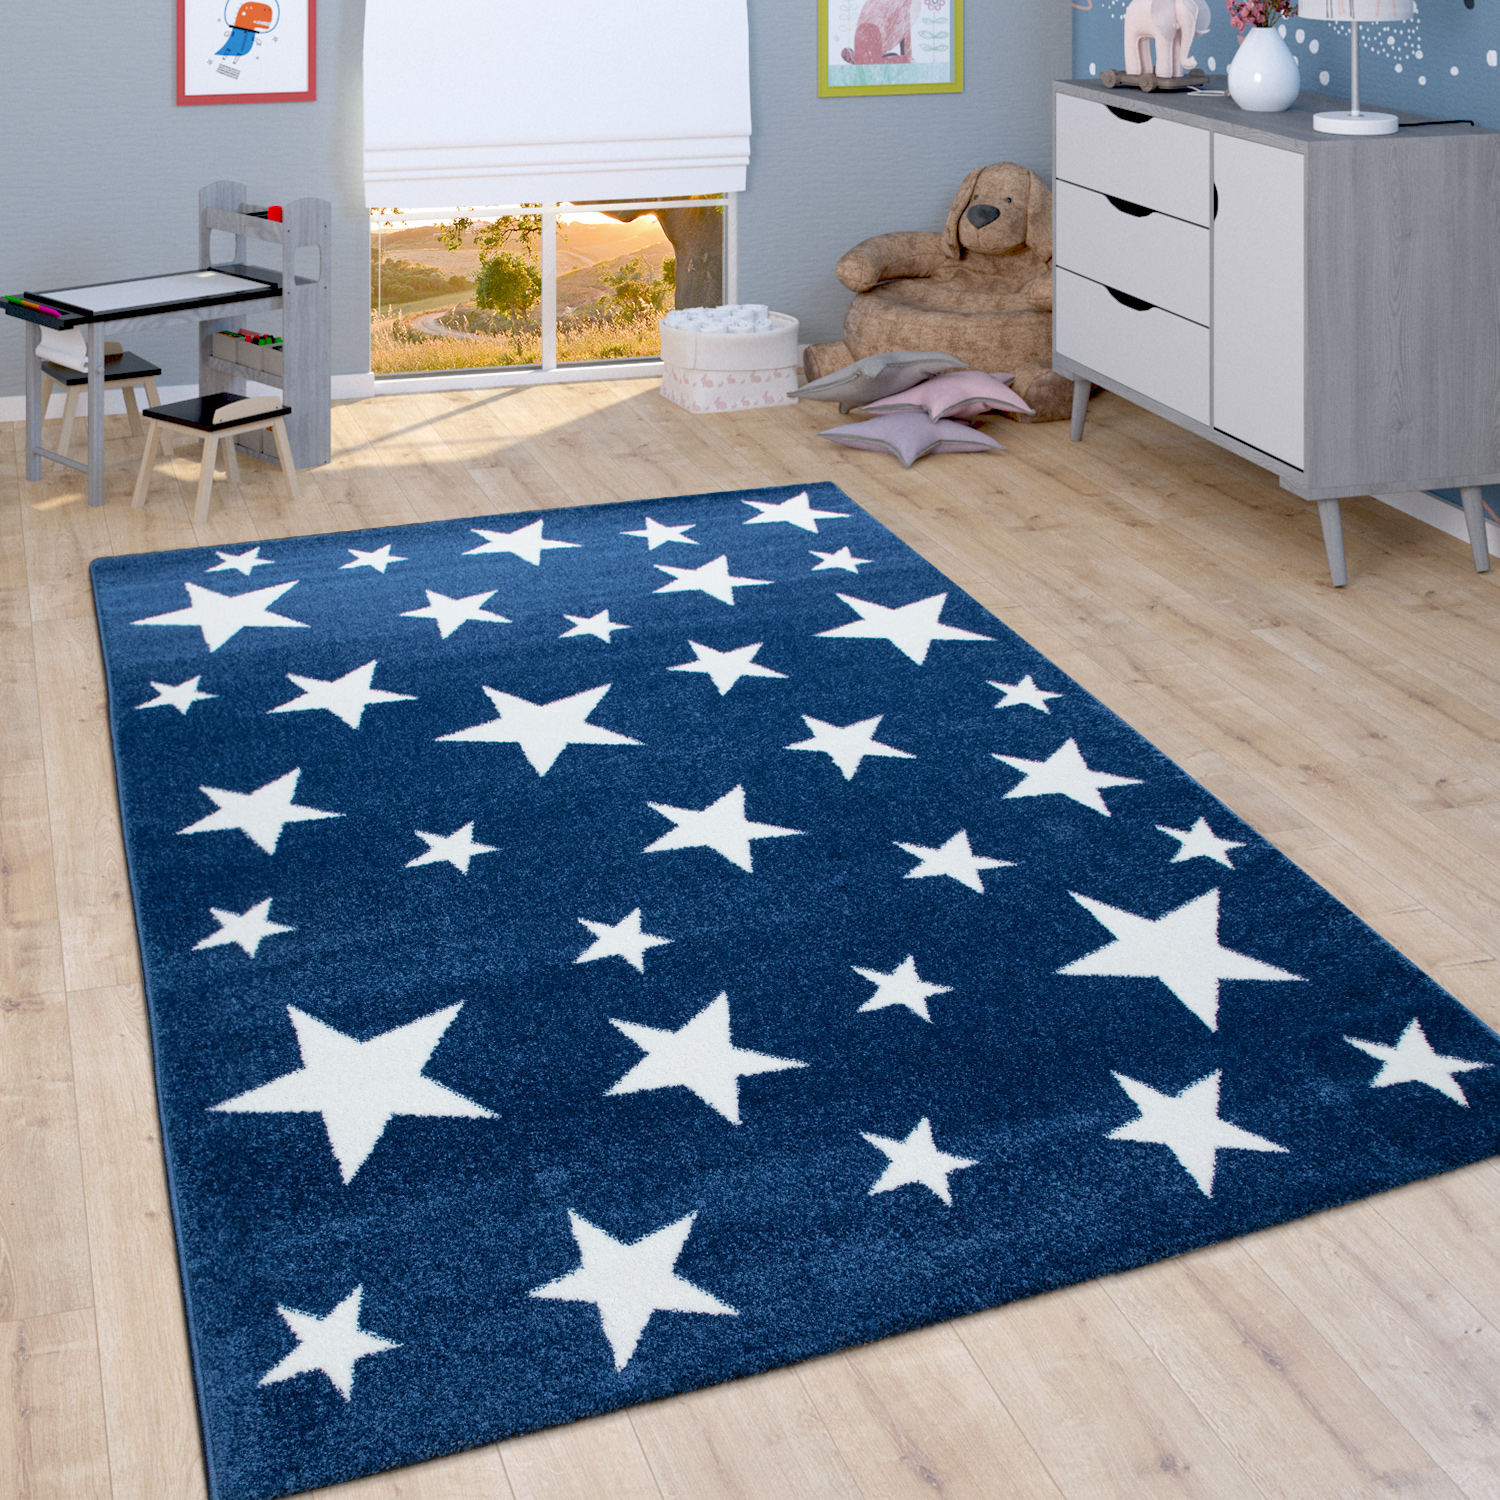 Kinder-Teppich Kinderzimmer Sternen-Design Blau 